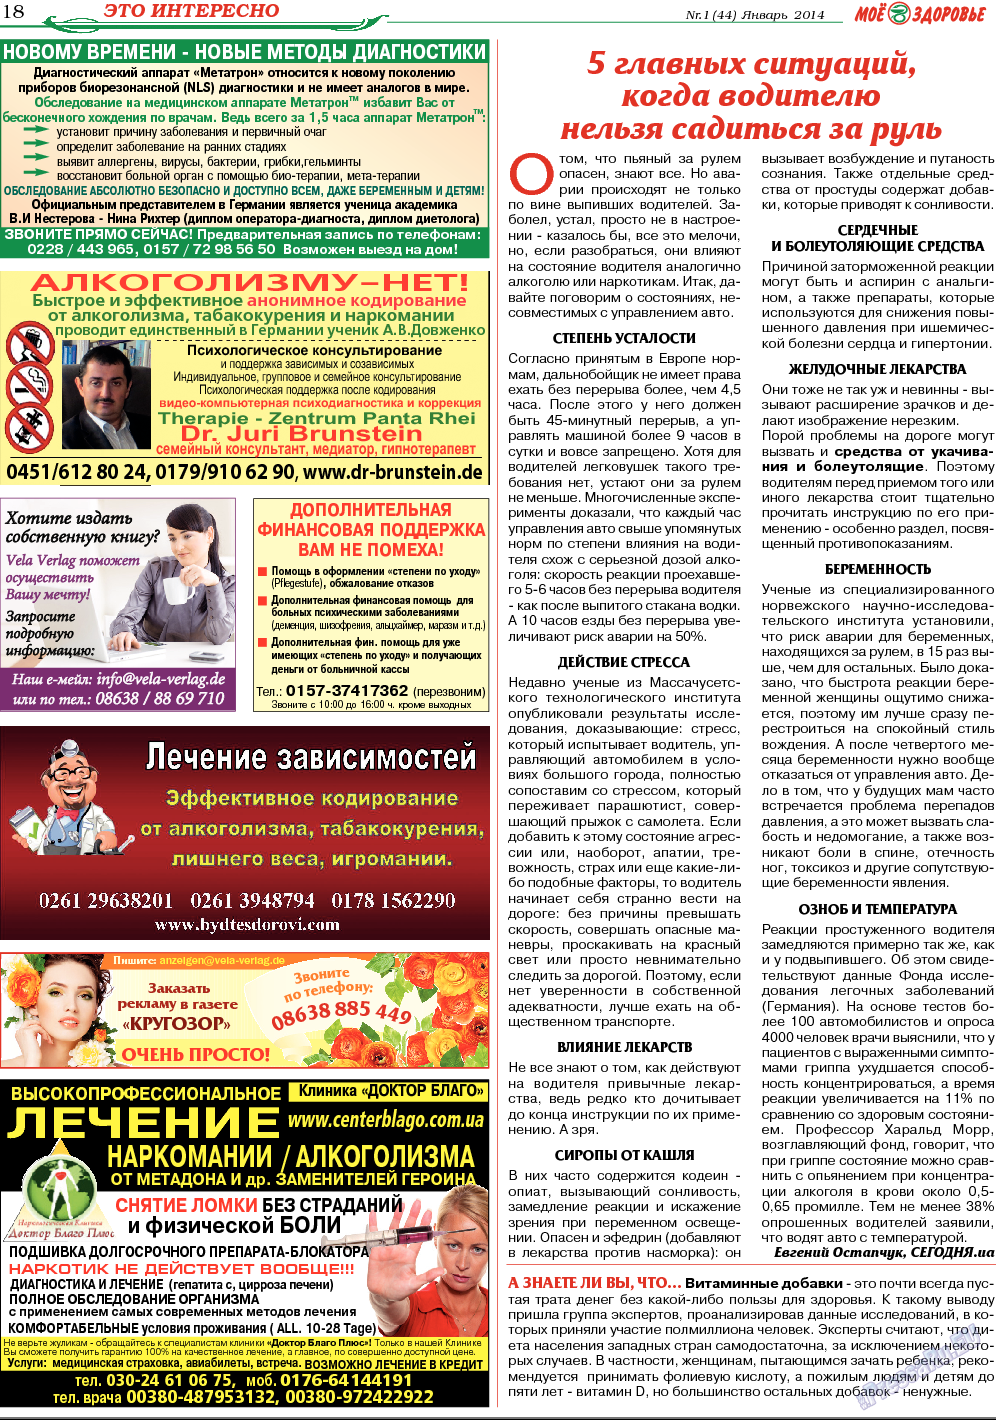 Кругозор (газета). 2014 год, номер 1, стр. 18